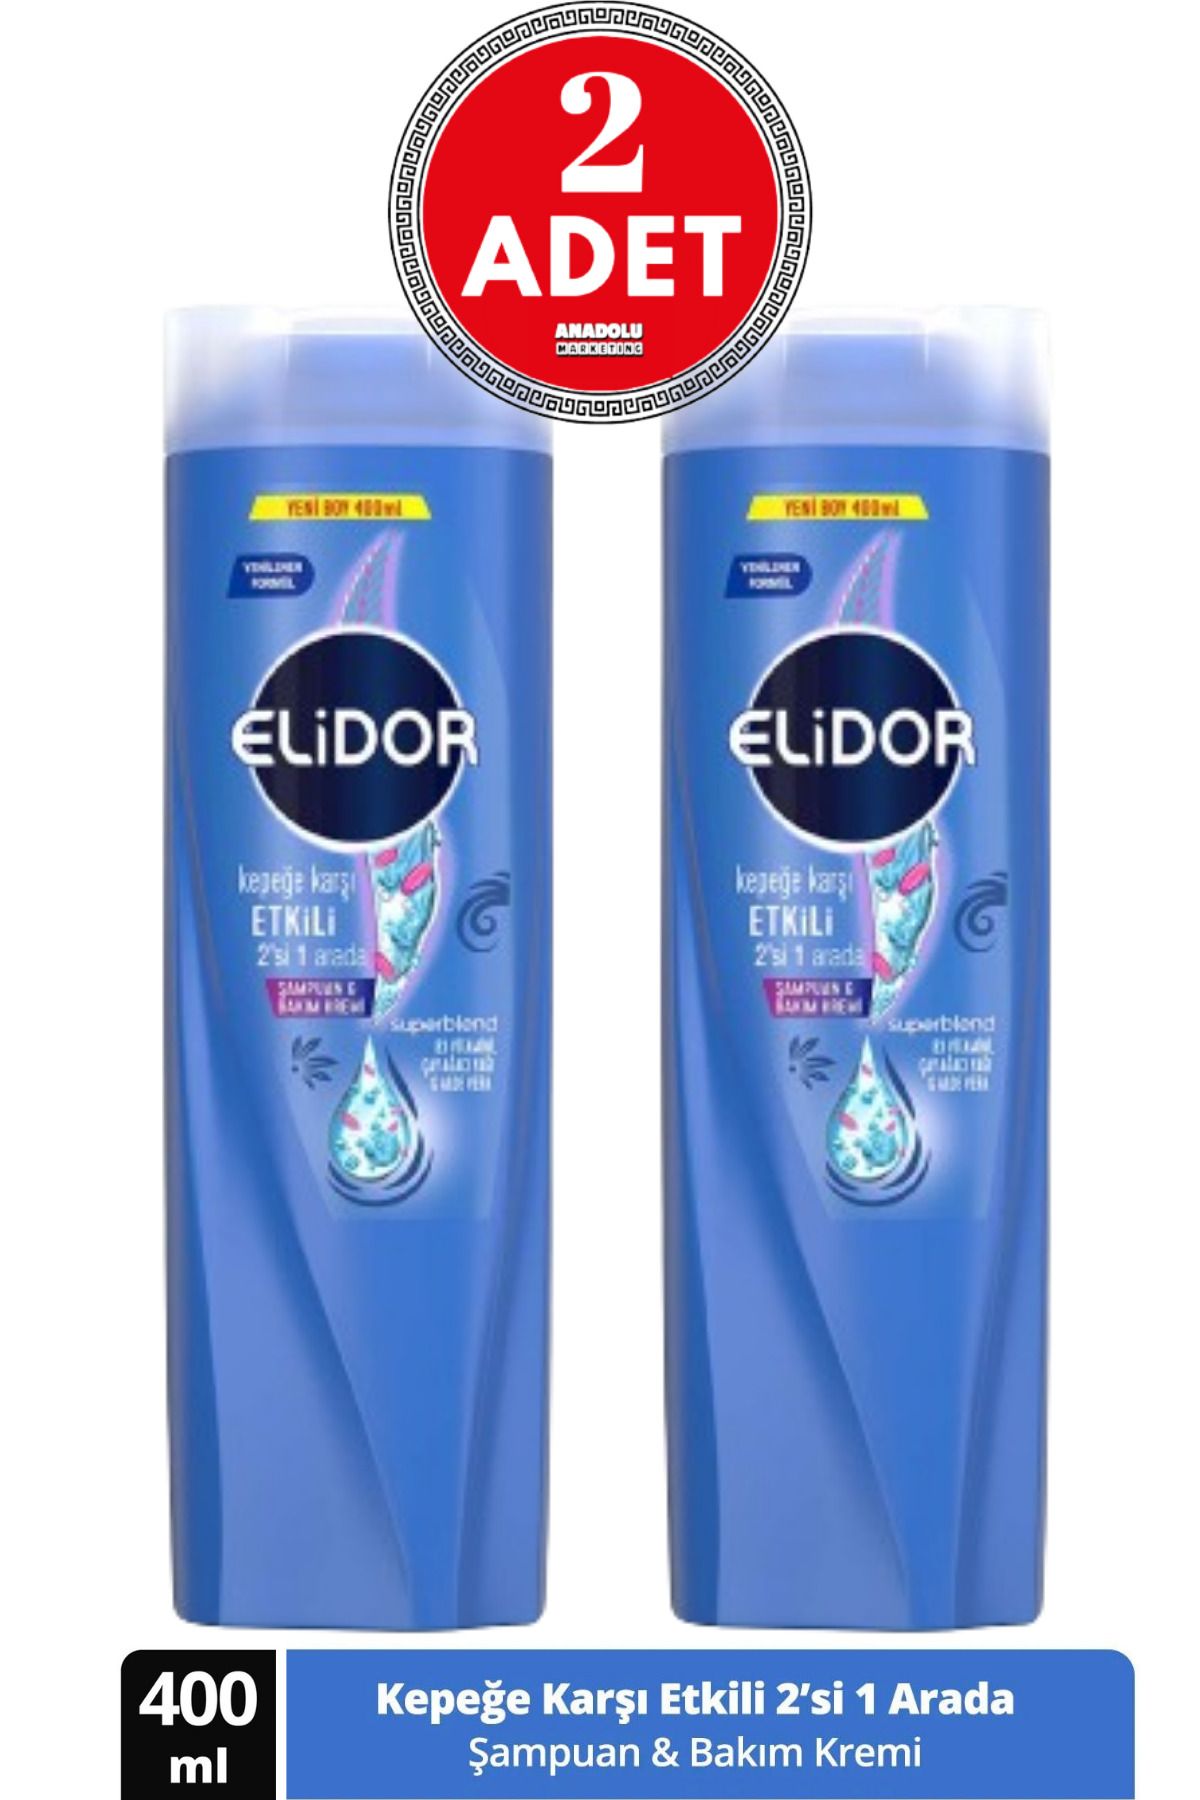 Elidor Superblend Şampuan ve Bakım Kremi Kepeğe Karşı Etkili 2'si 1 Arada 400 ml 2 ADET